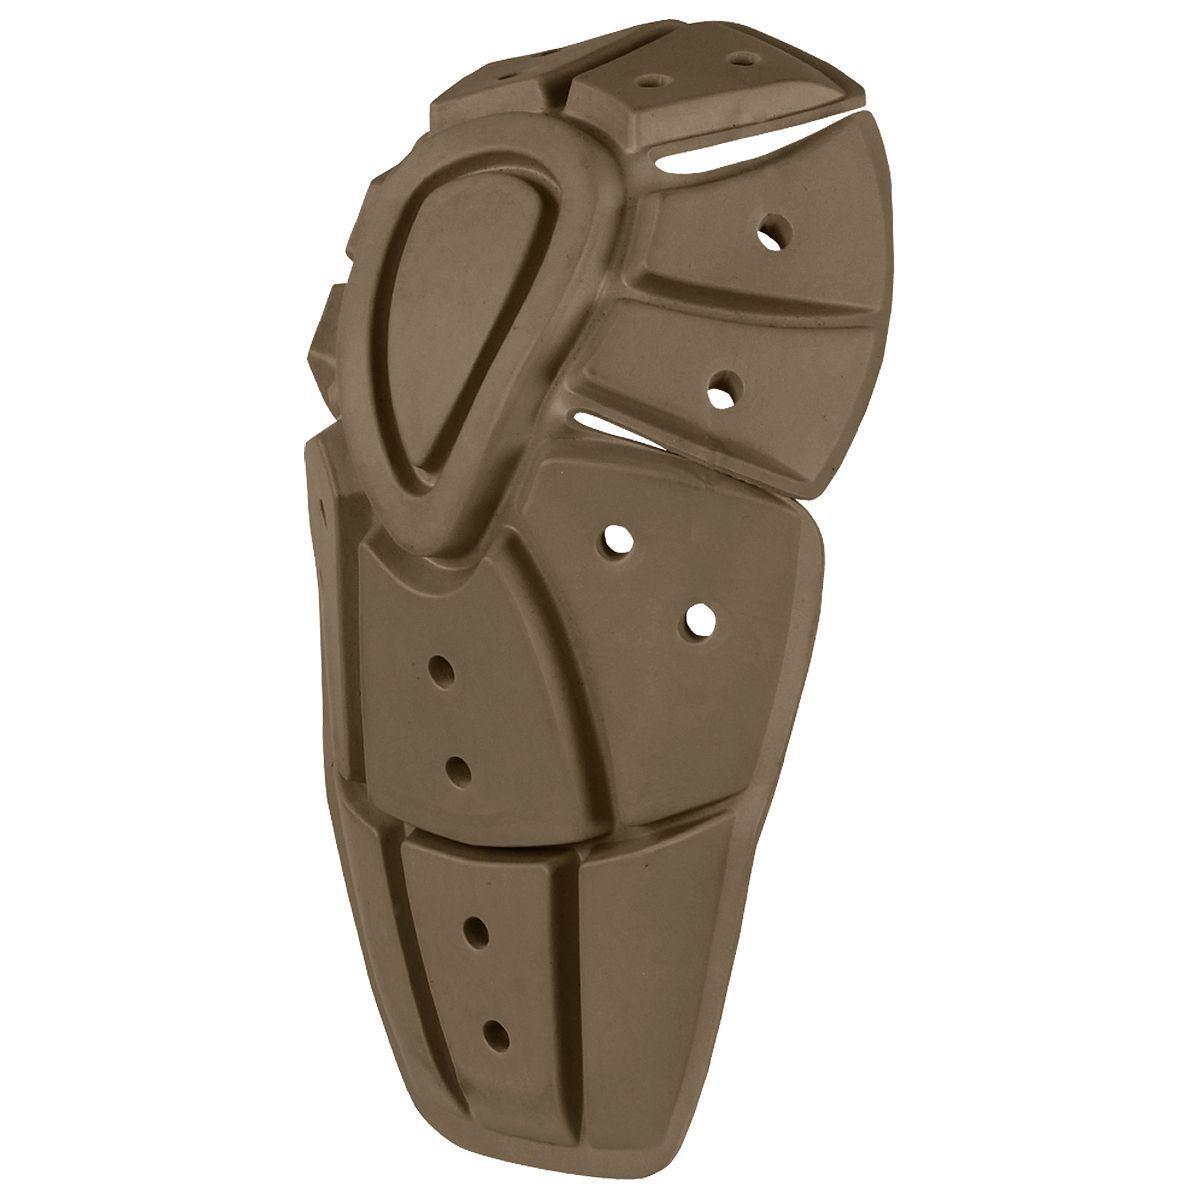 Condor Knee Pad Insert Tactical Condor Outdoor Tactical Gear Supplier Tactical Distributors Australia